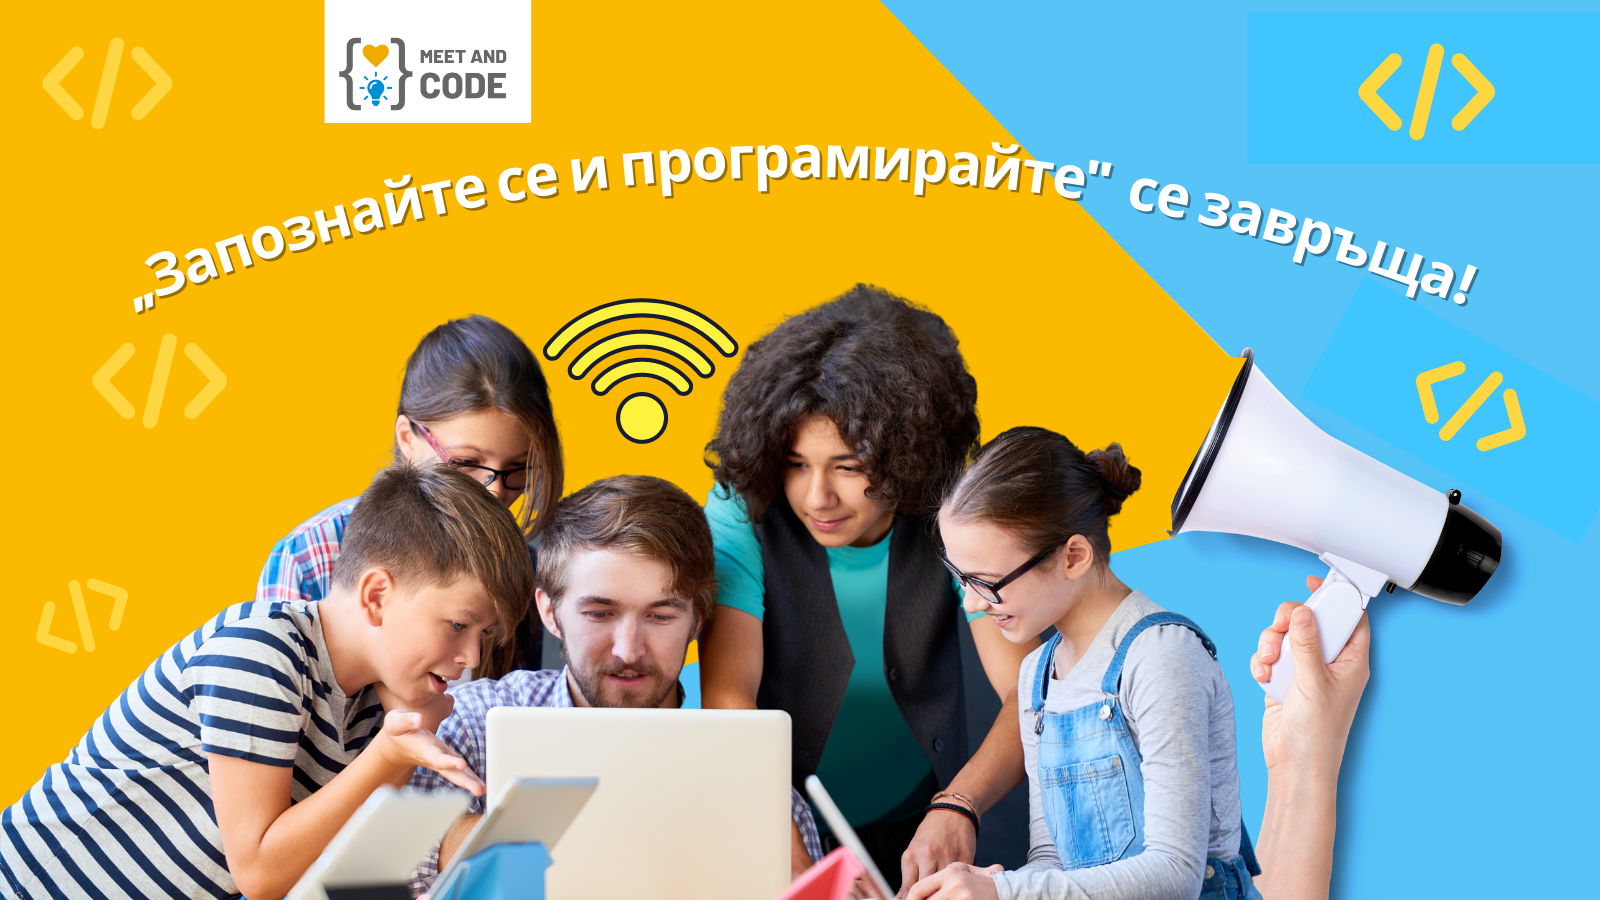 Започва шестото издание на инициативата за популяризиране на дигиталните умения сред деца и младежи - „Запознайте се и